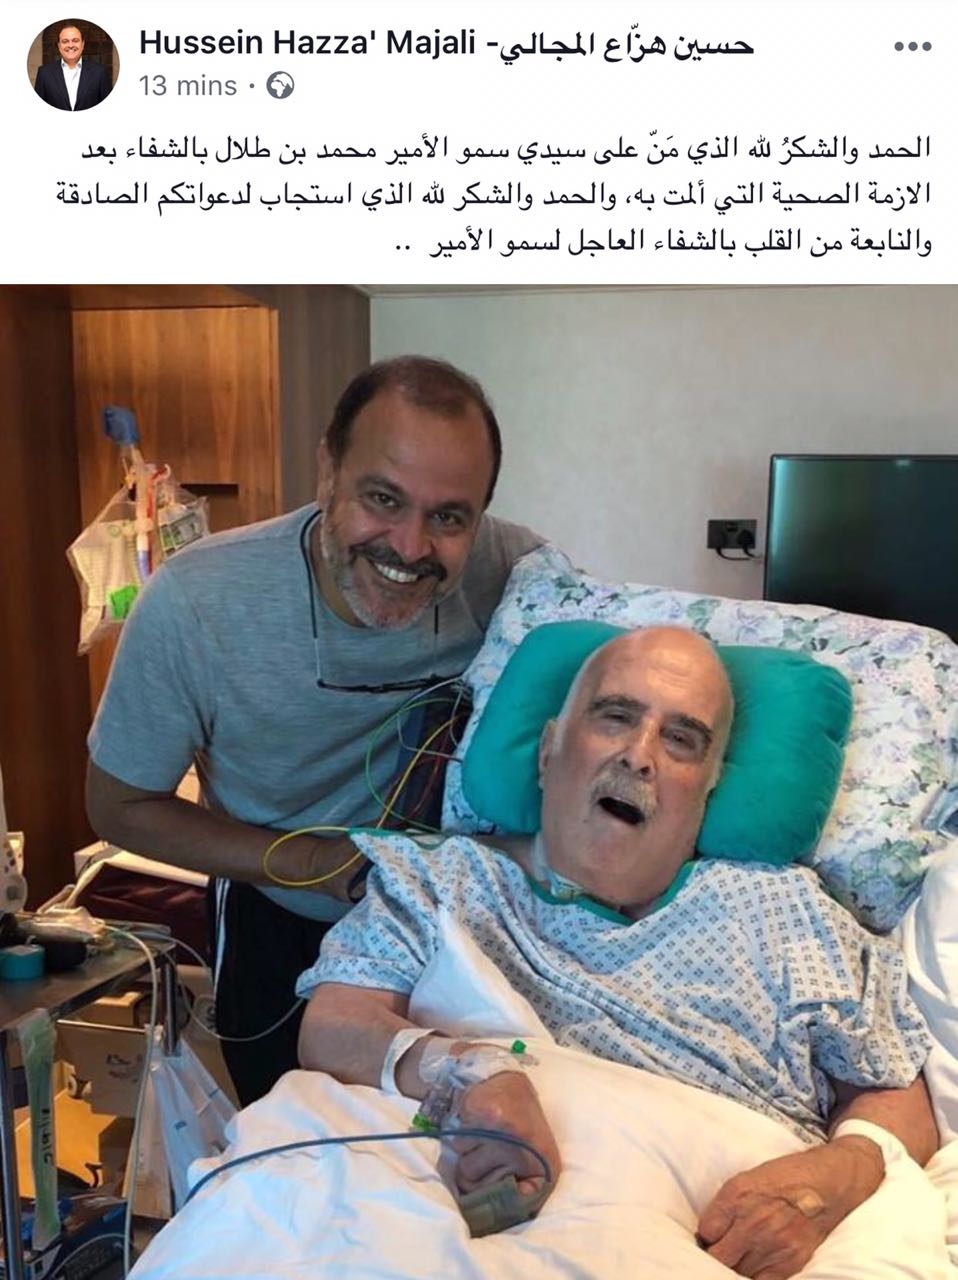 ما هي قصة الصورة التي نشرها "حسين المجالي" مع الامير محمد ؟